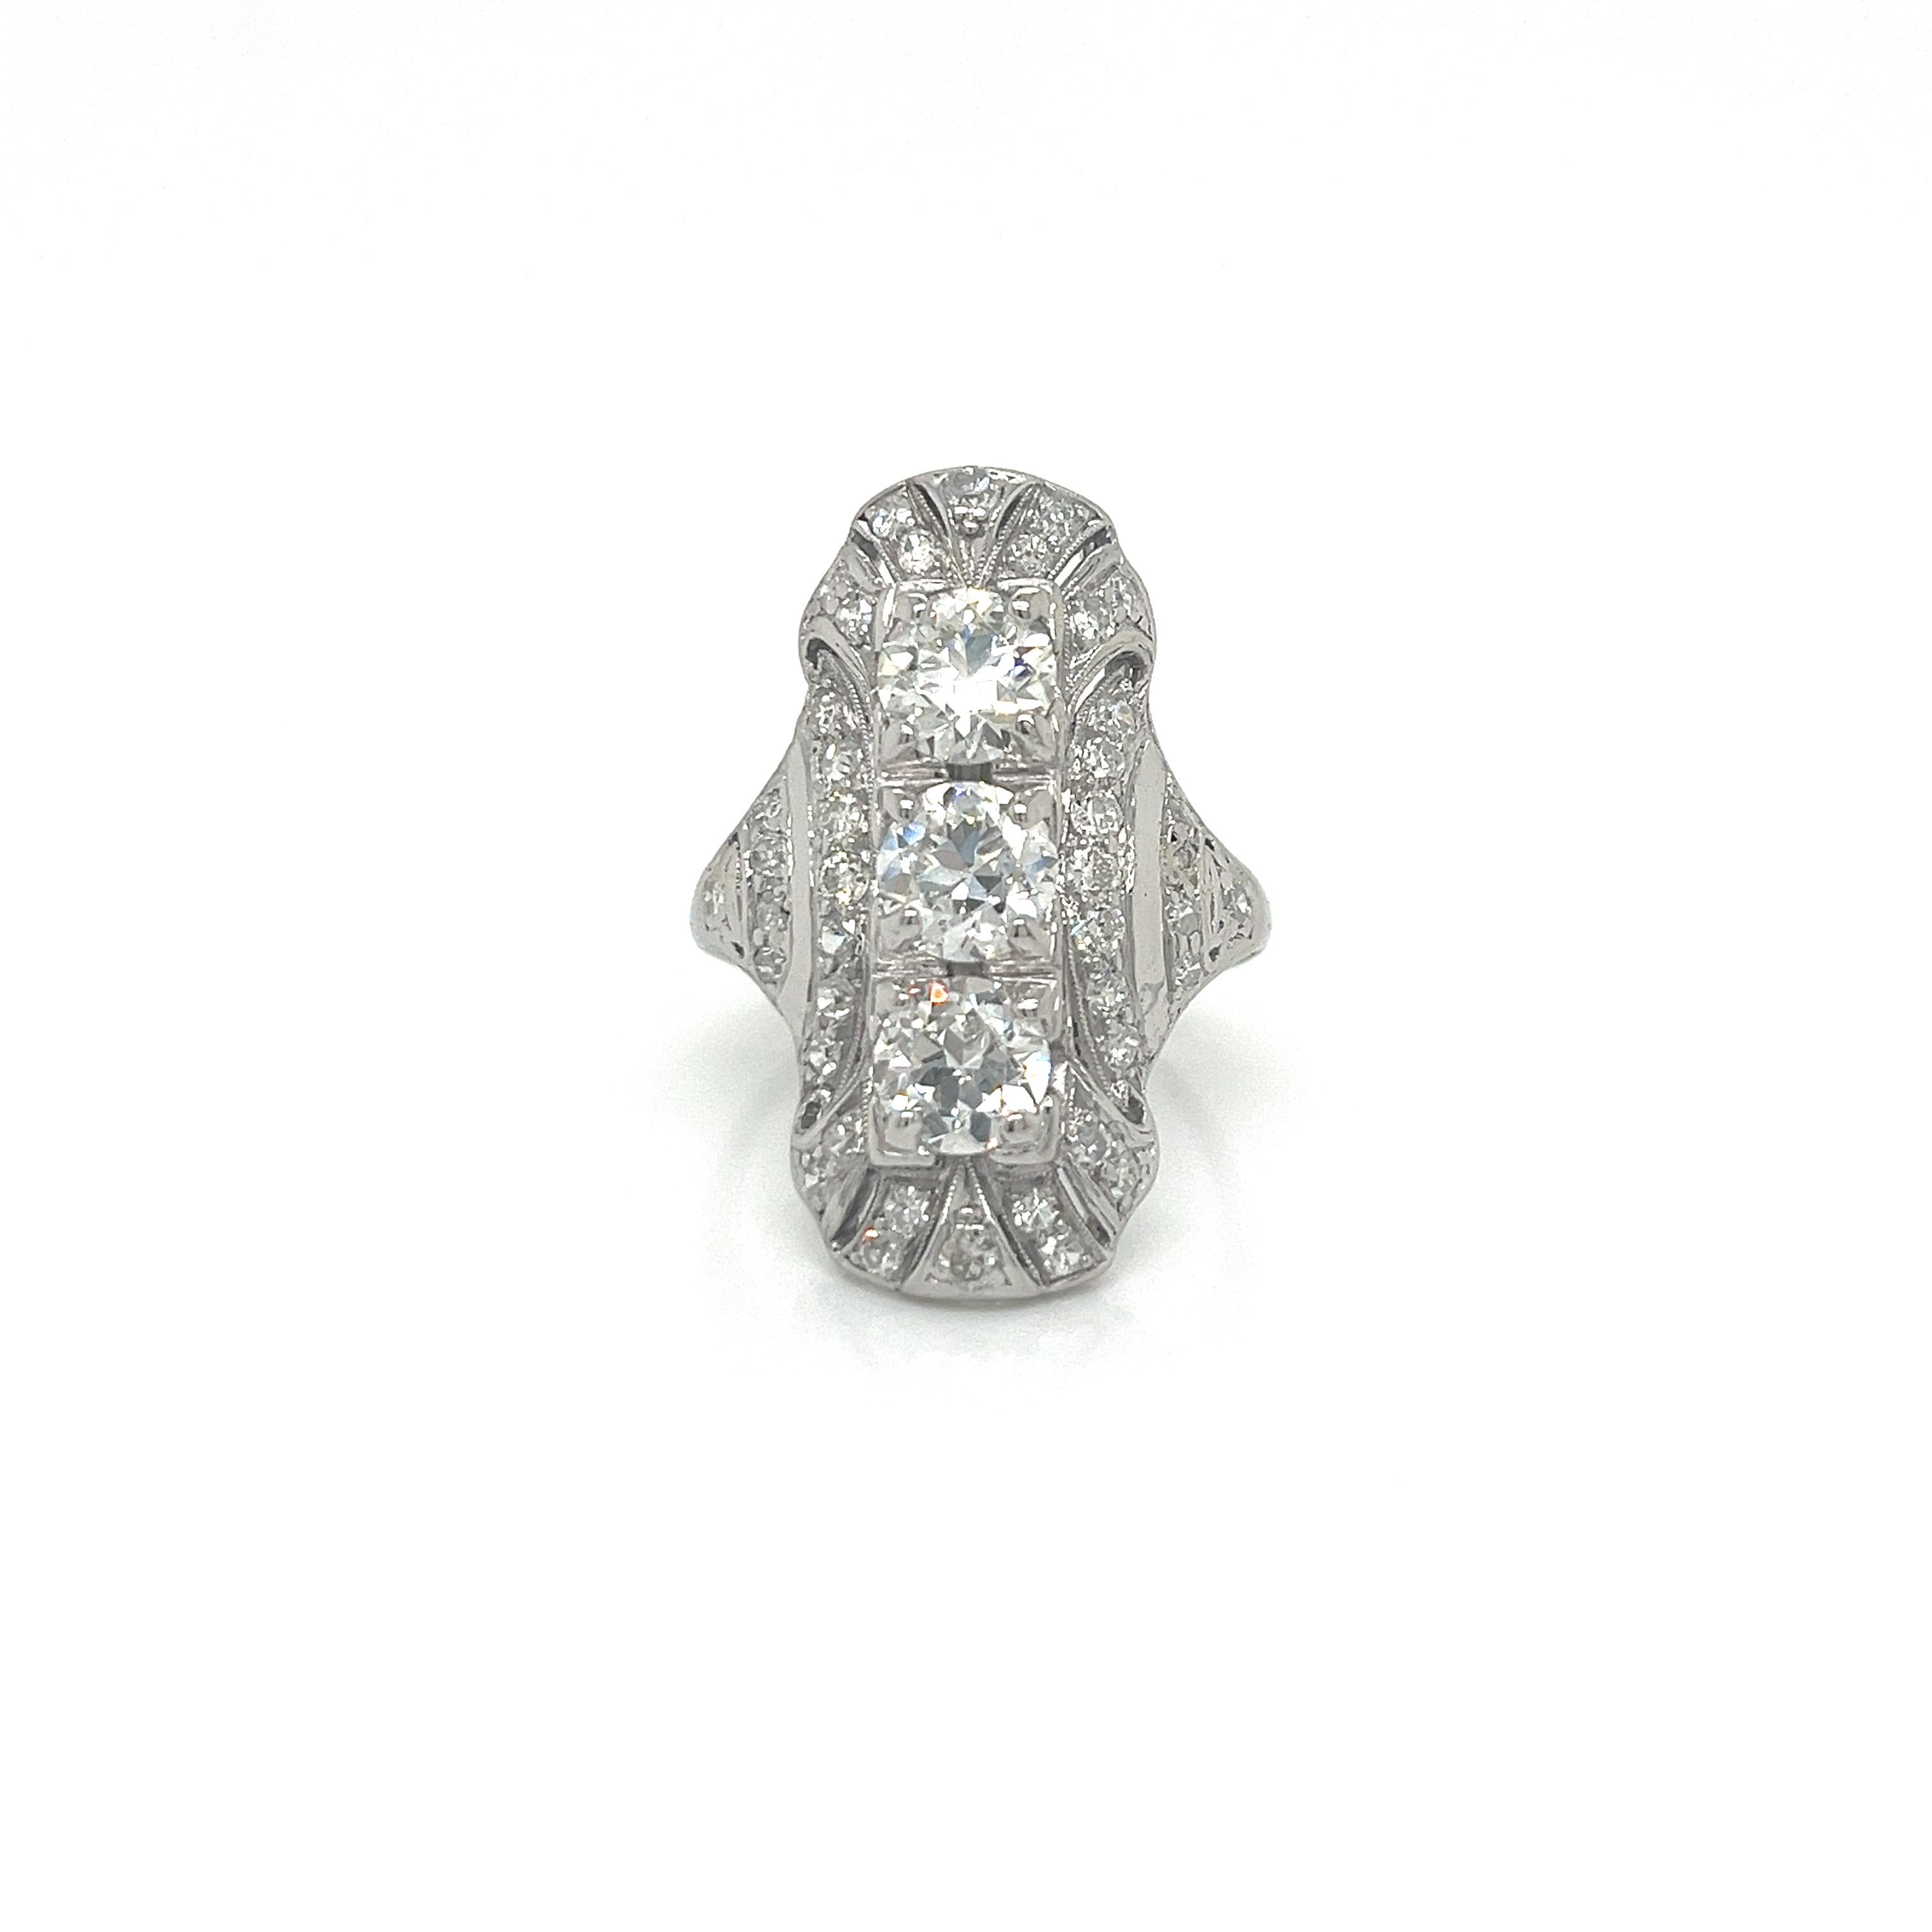 Dieser Platin-Tafelring ist ein exquisites Beispiel für die Kunst der 1930er Jahre. Drei prächtige Diamanten im europäischen Schliff bilden den funkelnden Mittelpunkt des Rings. Jeder der drei Diamanten im alten europäischen Schliff wiegt etwa 0,90